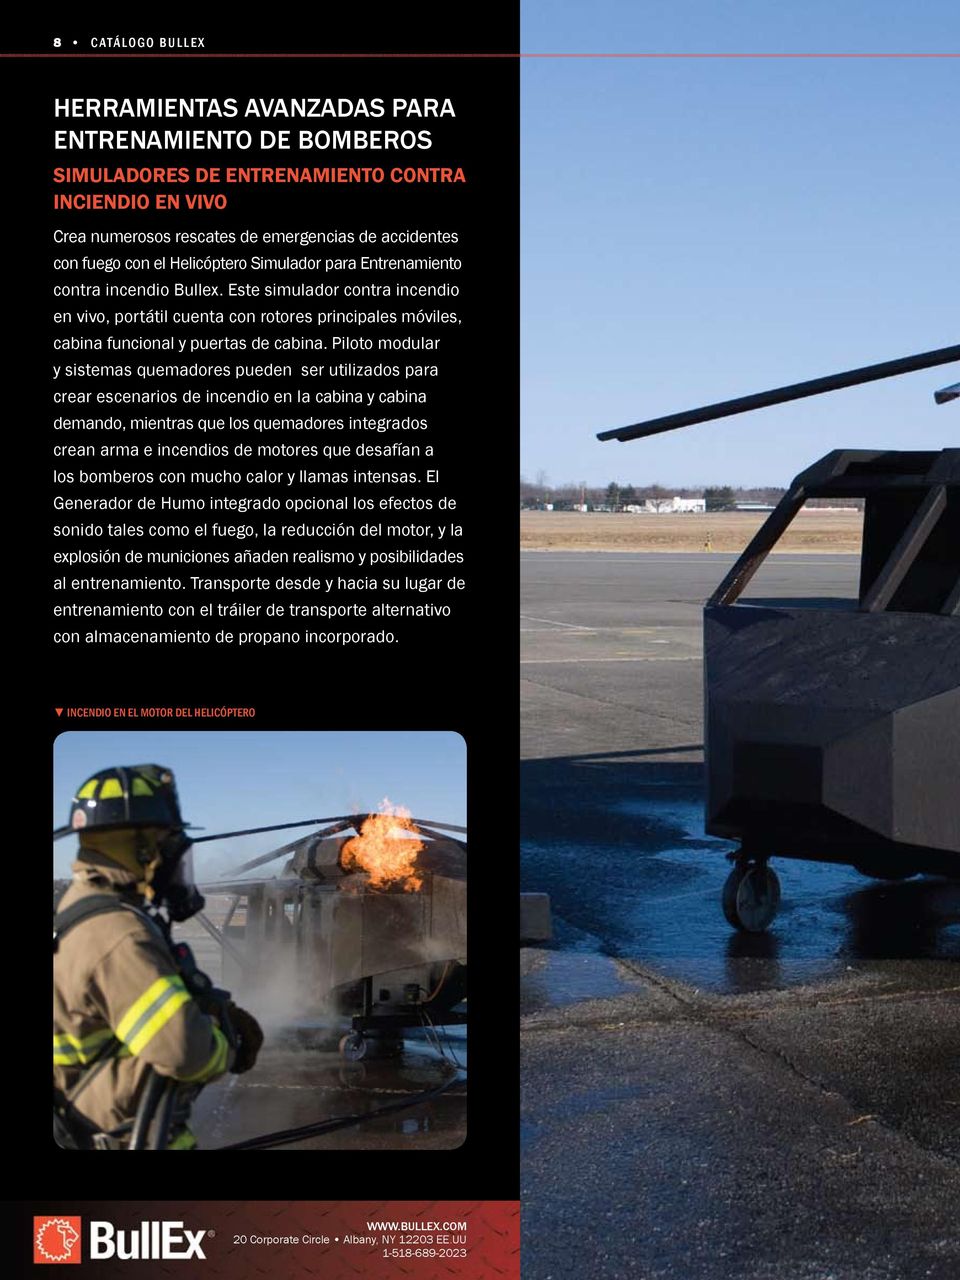 Piloto modular y sistemas quemadores pueden ser utilizados para crear escenarios de incendio en la cabina y cabina demando, mientras que los quemadores integrados crean arma e incendios de motores